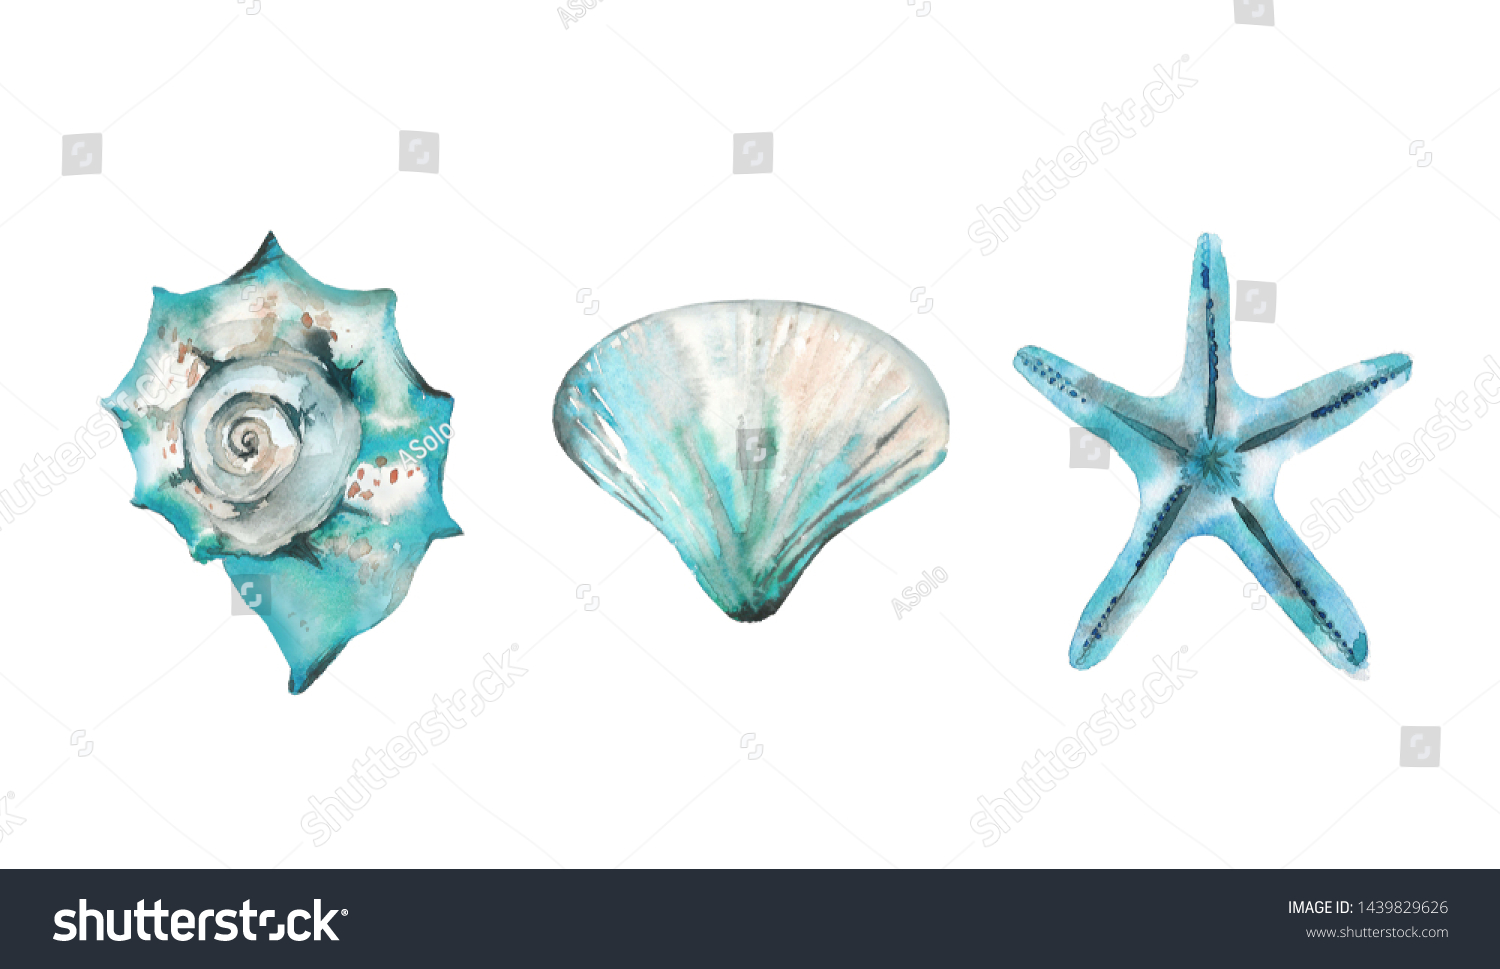 アクアマリンの海の生き物セット 貝類とヒトデ 白い背景に水彩イラスト のイラスト素材